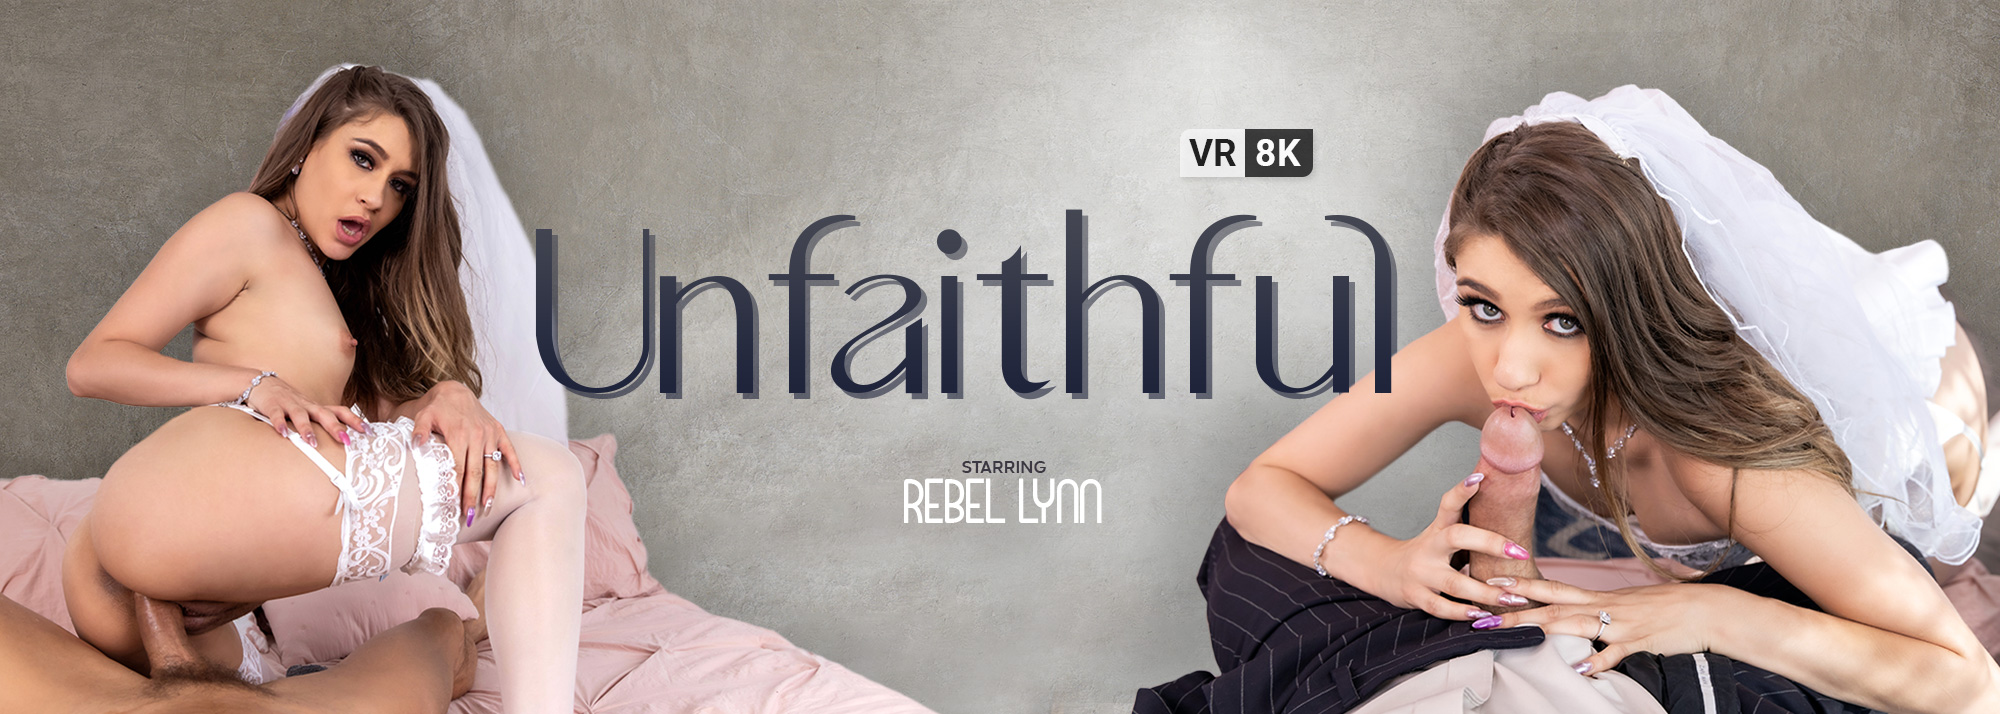 Unfaithful - VR Porn Video, Starring Rebel Lynn VR